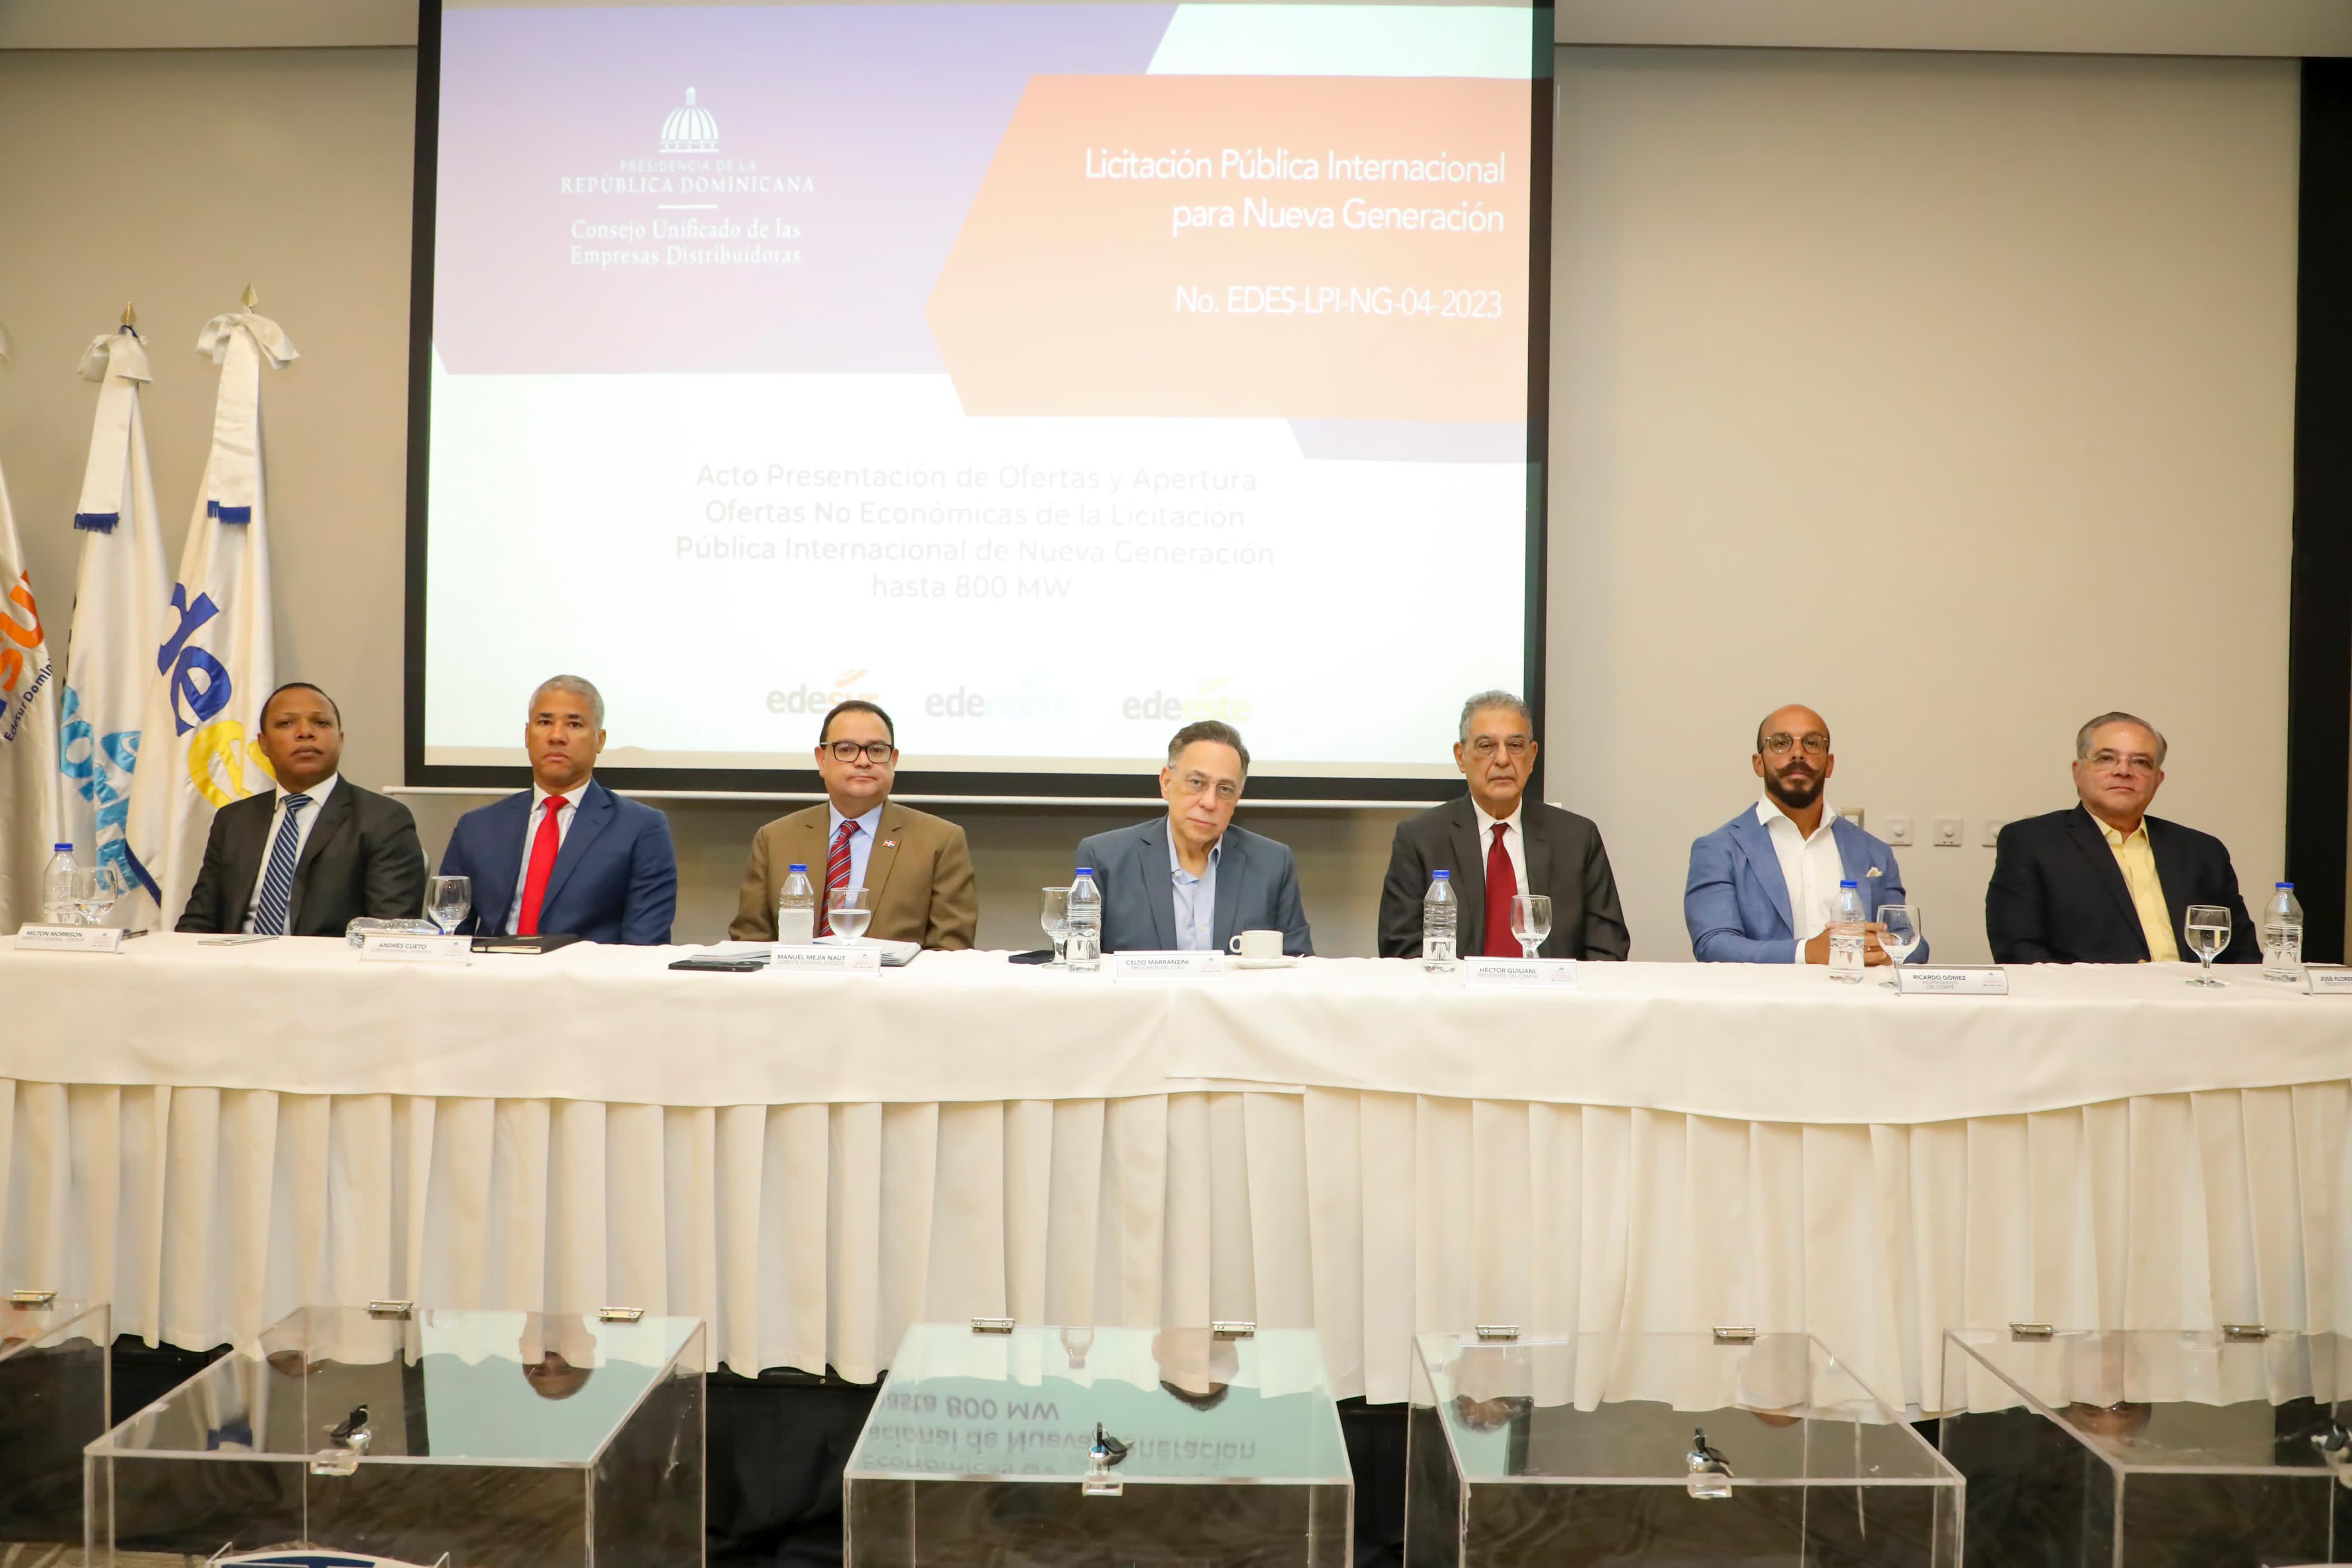 REPÚBLICA DOMINICANA: Empresas Distribuidoras de Electricidad reciben ofertas para la compra de 800 MW